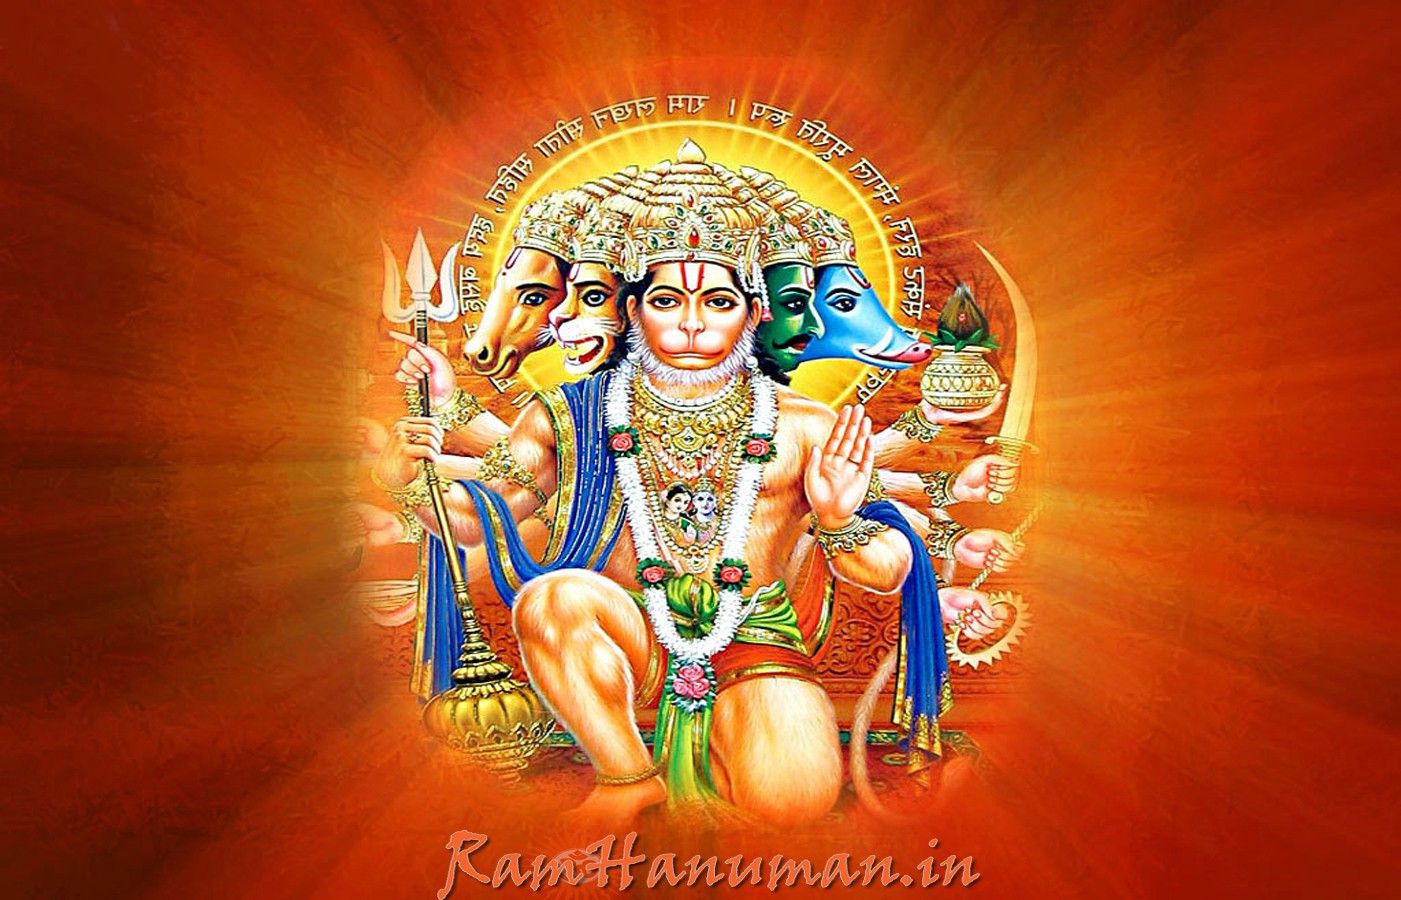 Hanuman Bhakti - Hanuman Ji Photo https://bit.ly/387kv8v .... | Facebook